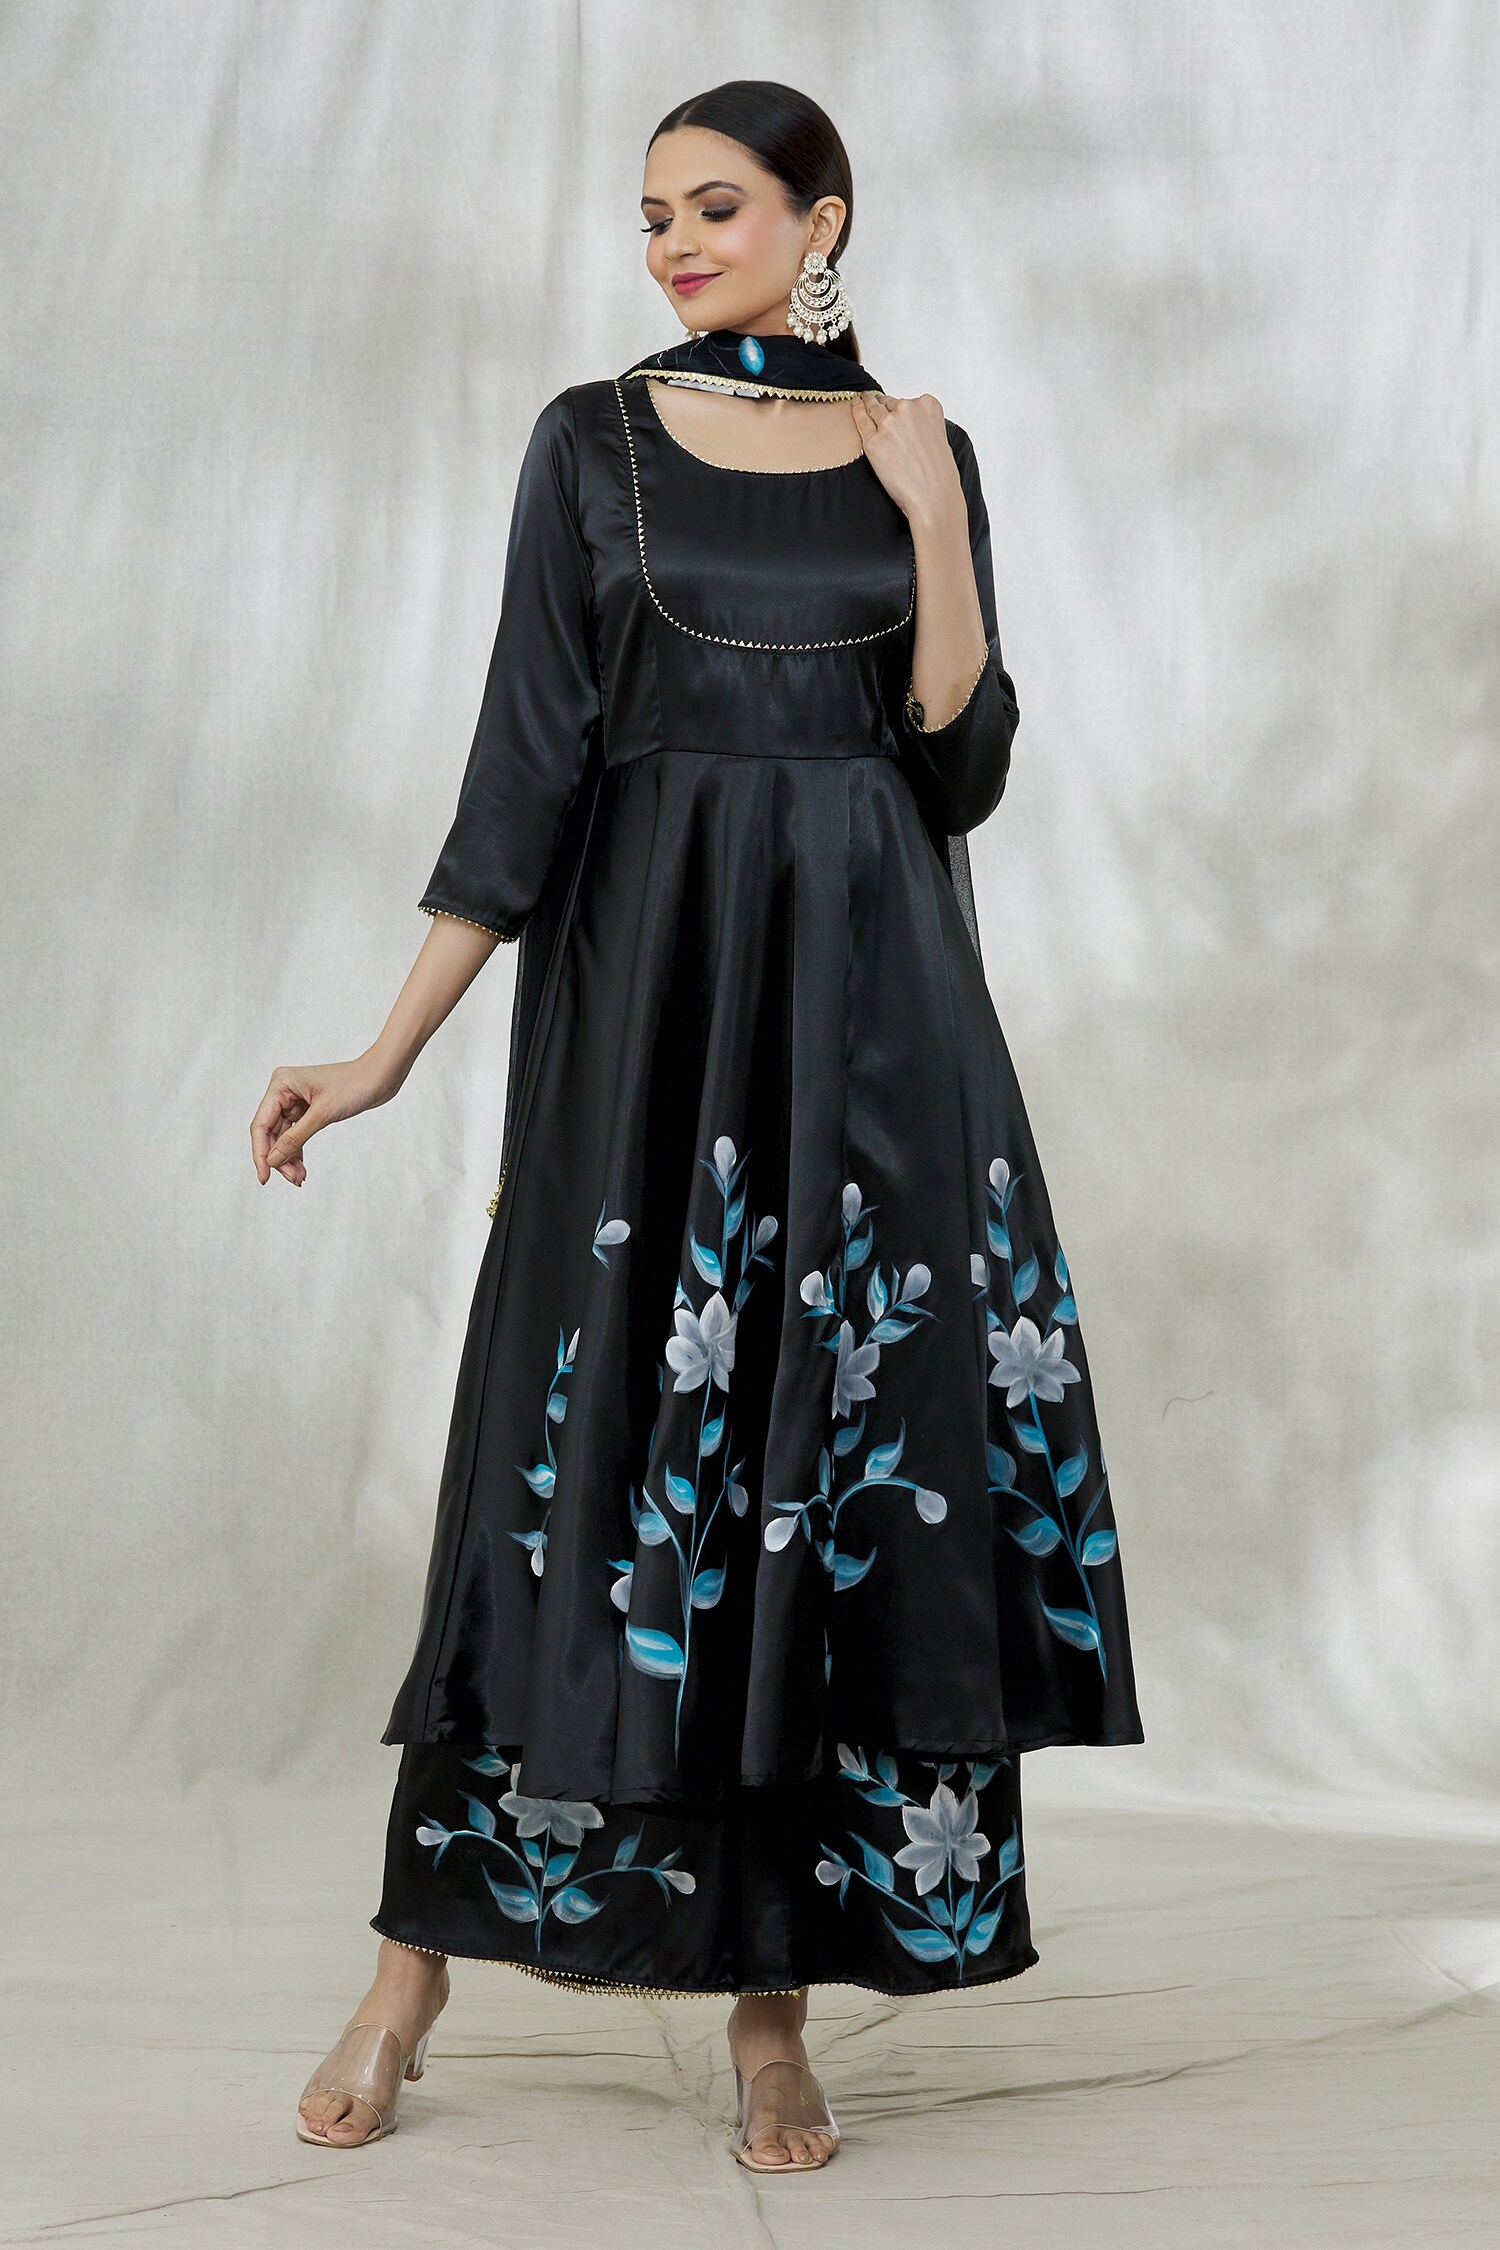 Ladies Georgette Black Anarkali Suit at Rs 700 in Jaipur | ID: 2851899577988